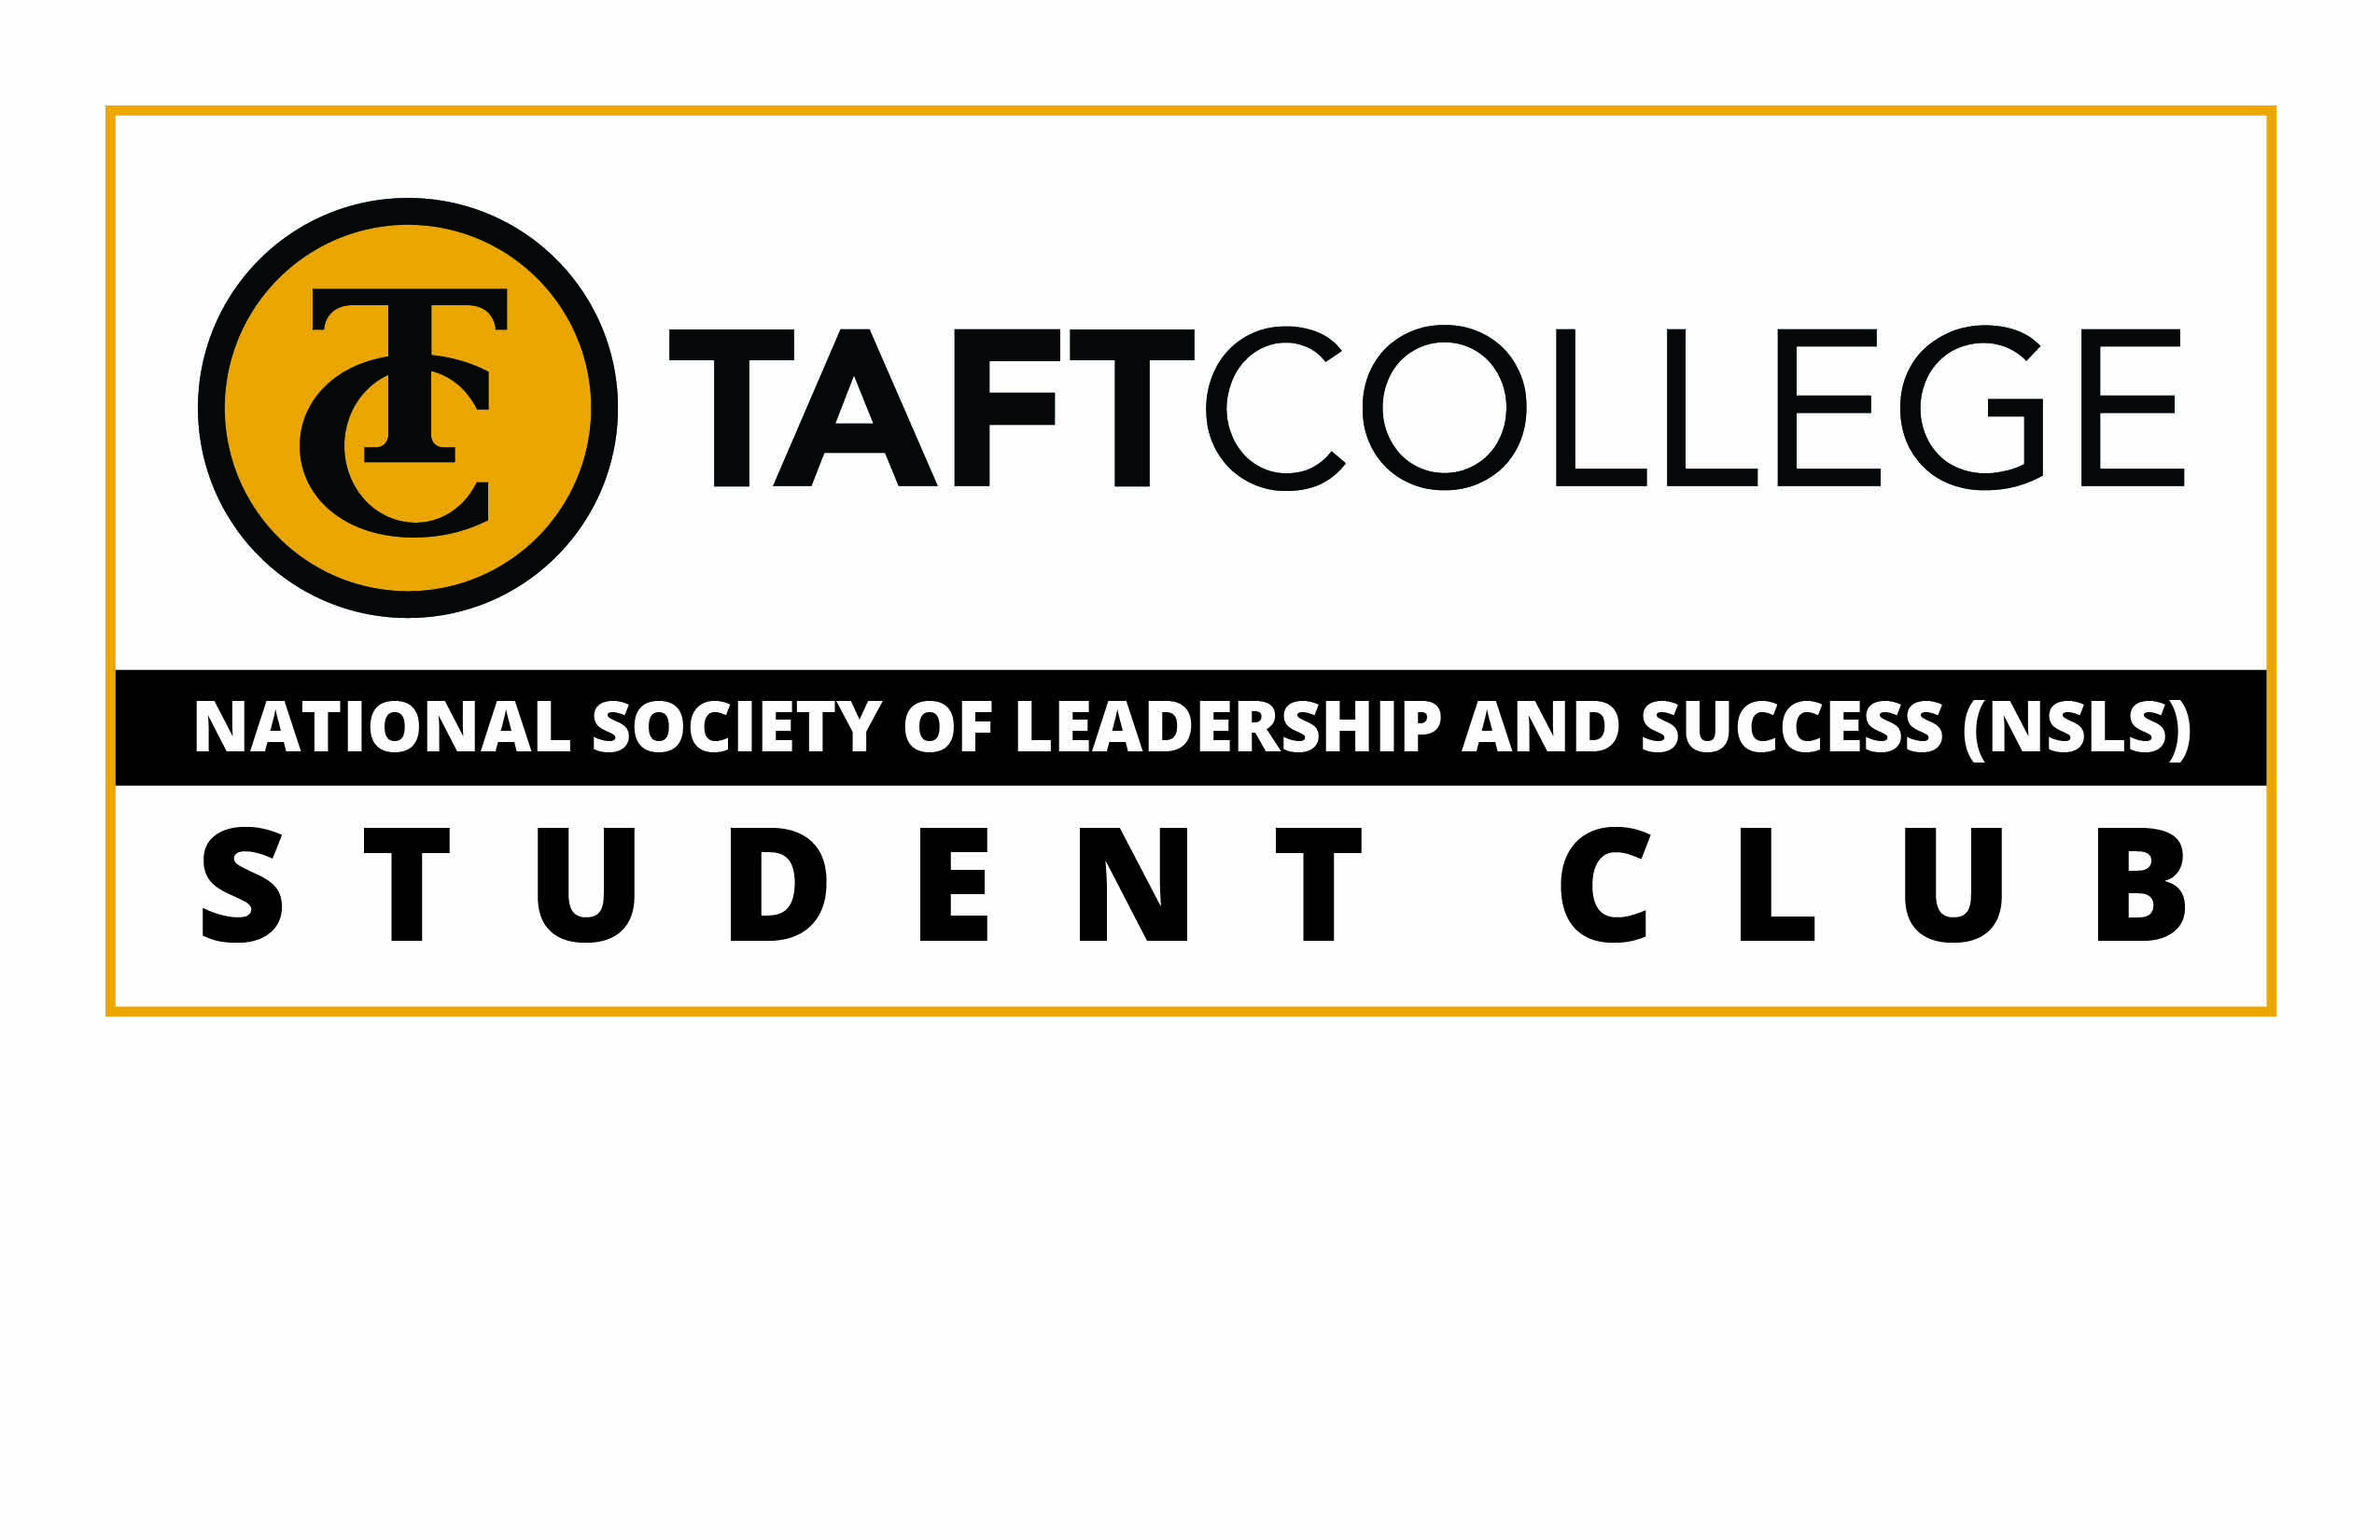 National Society of Leadership and Succcess logo